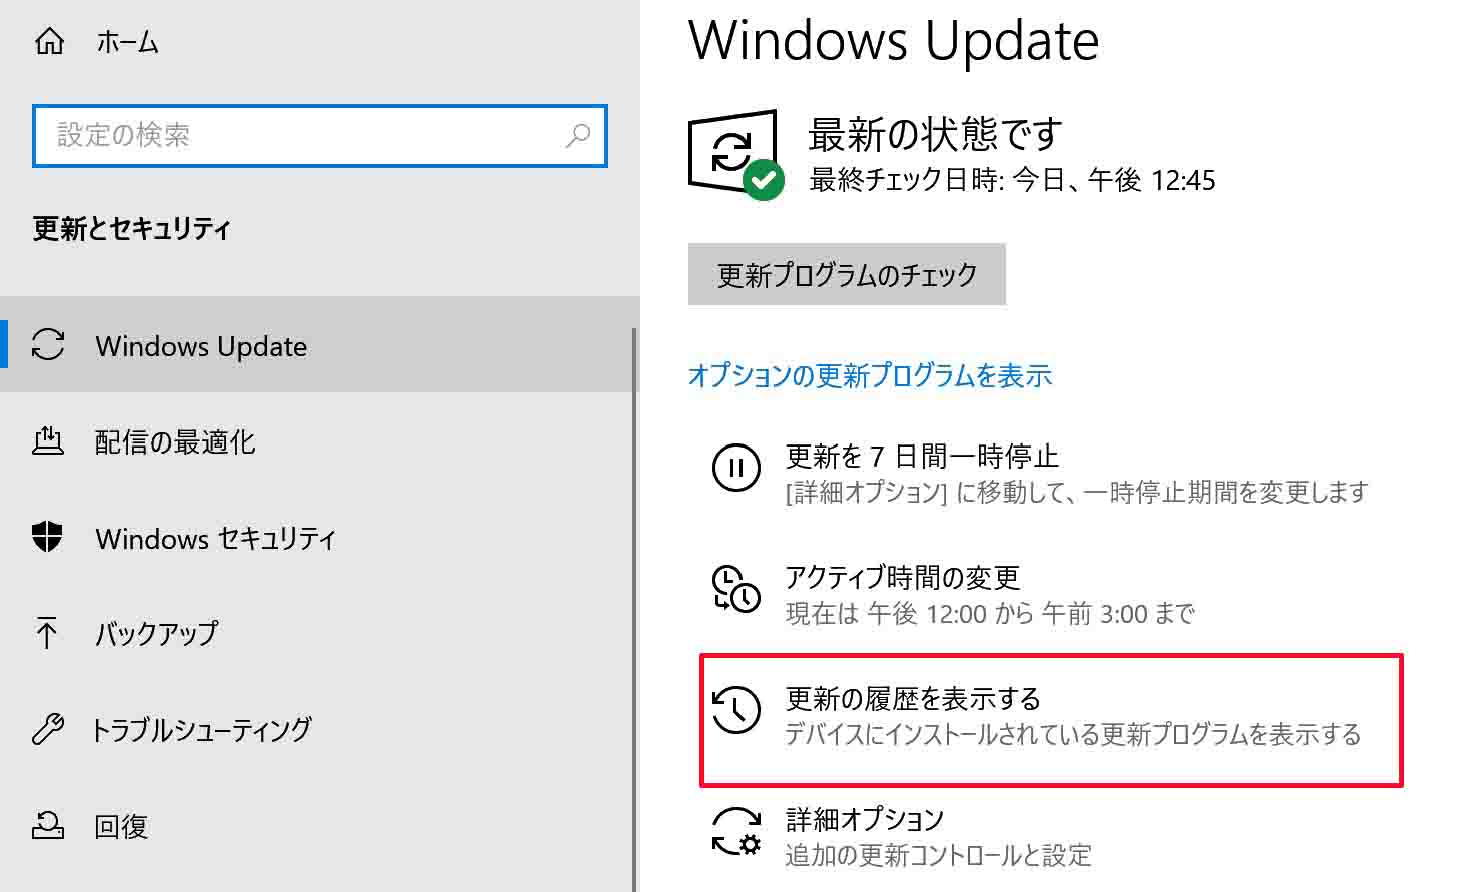 ③「Windows Update」内にある「更新の履歴を表示する」をクリックして開きます。